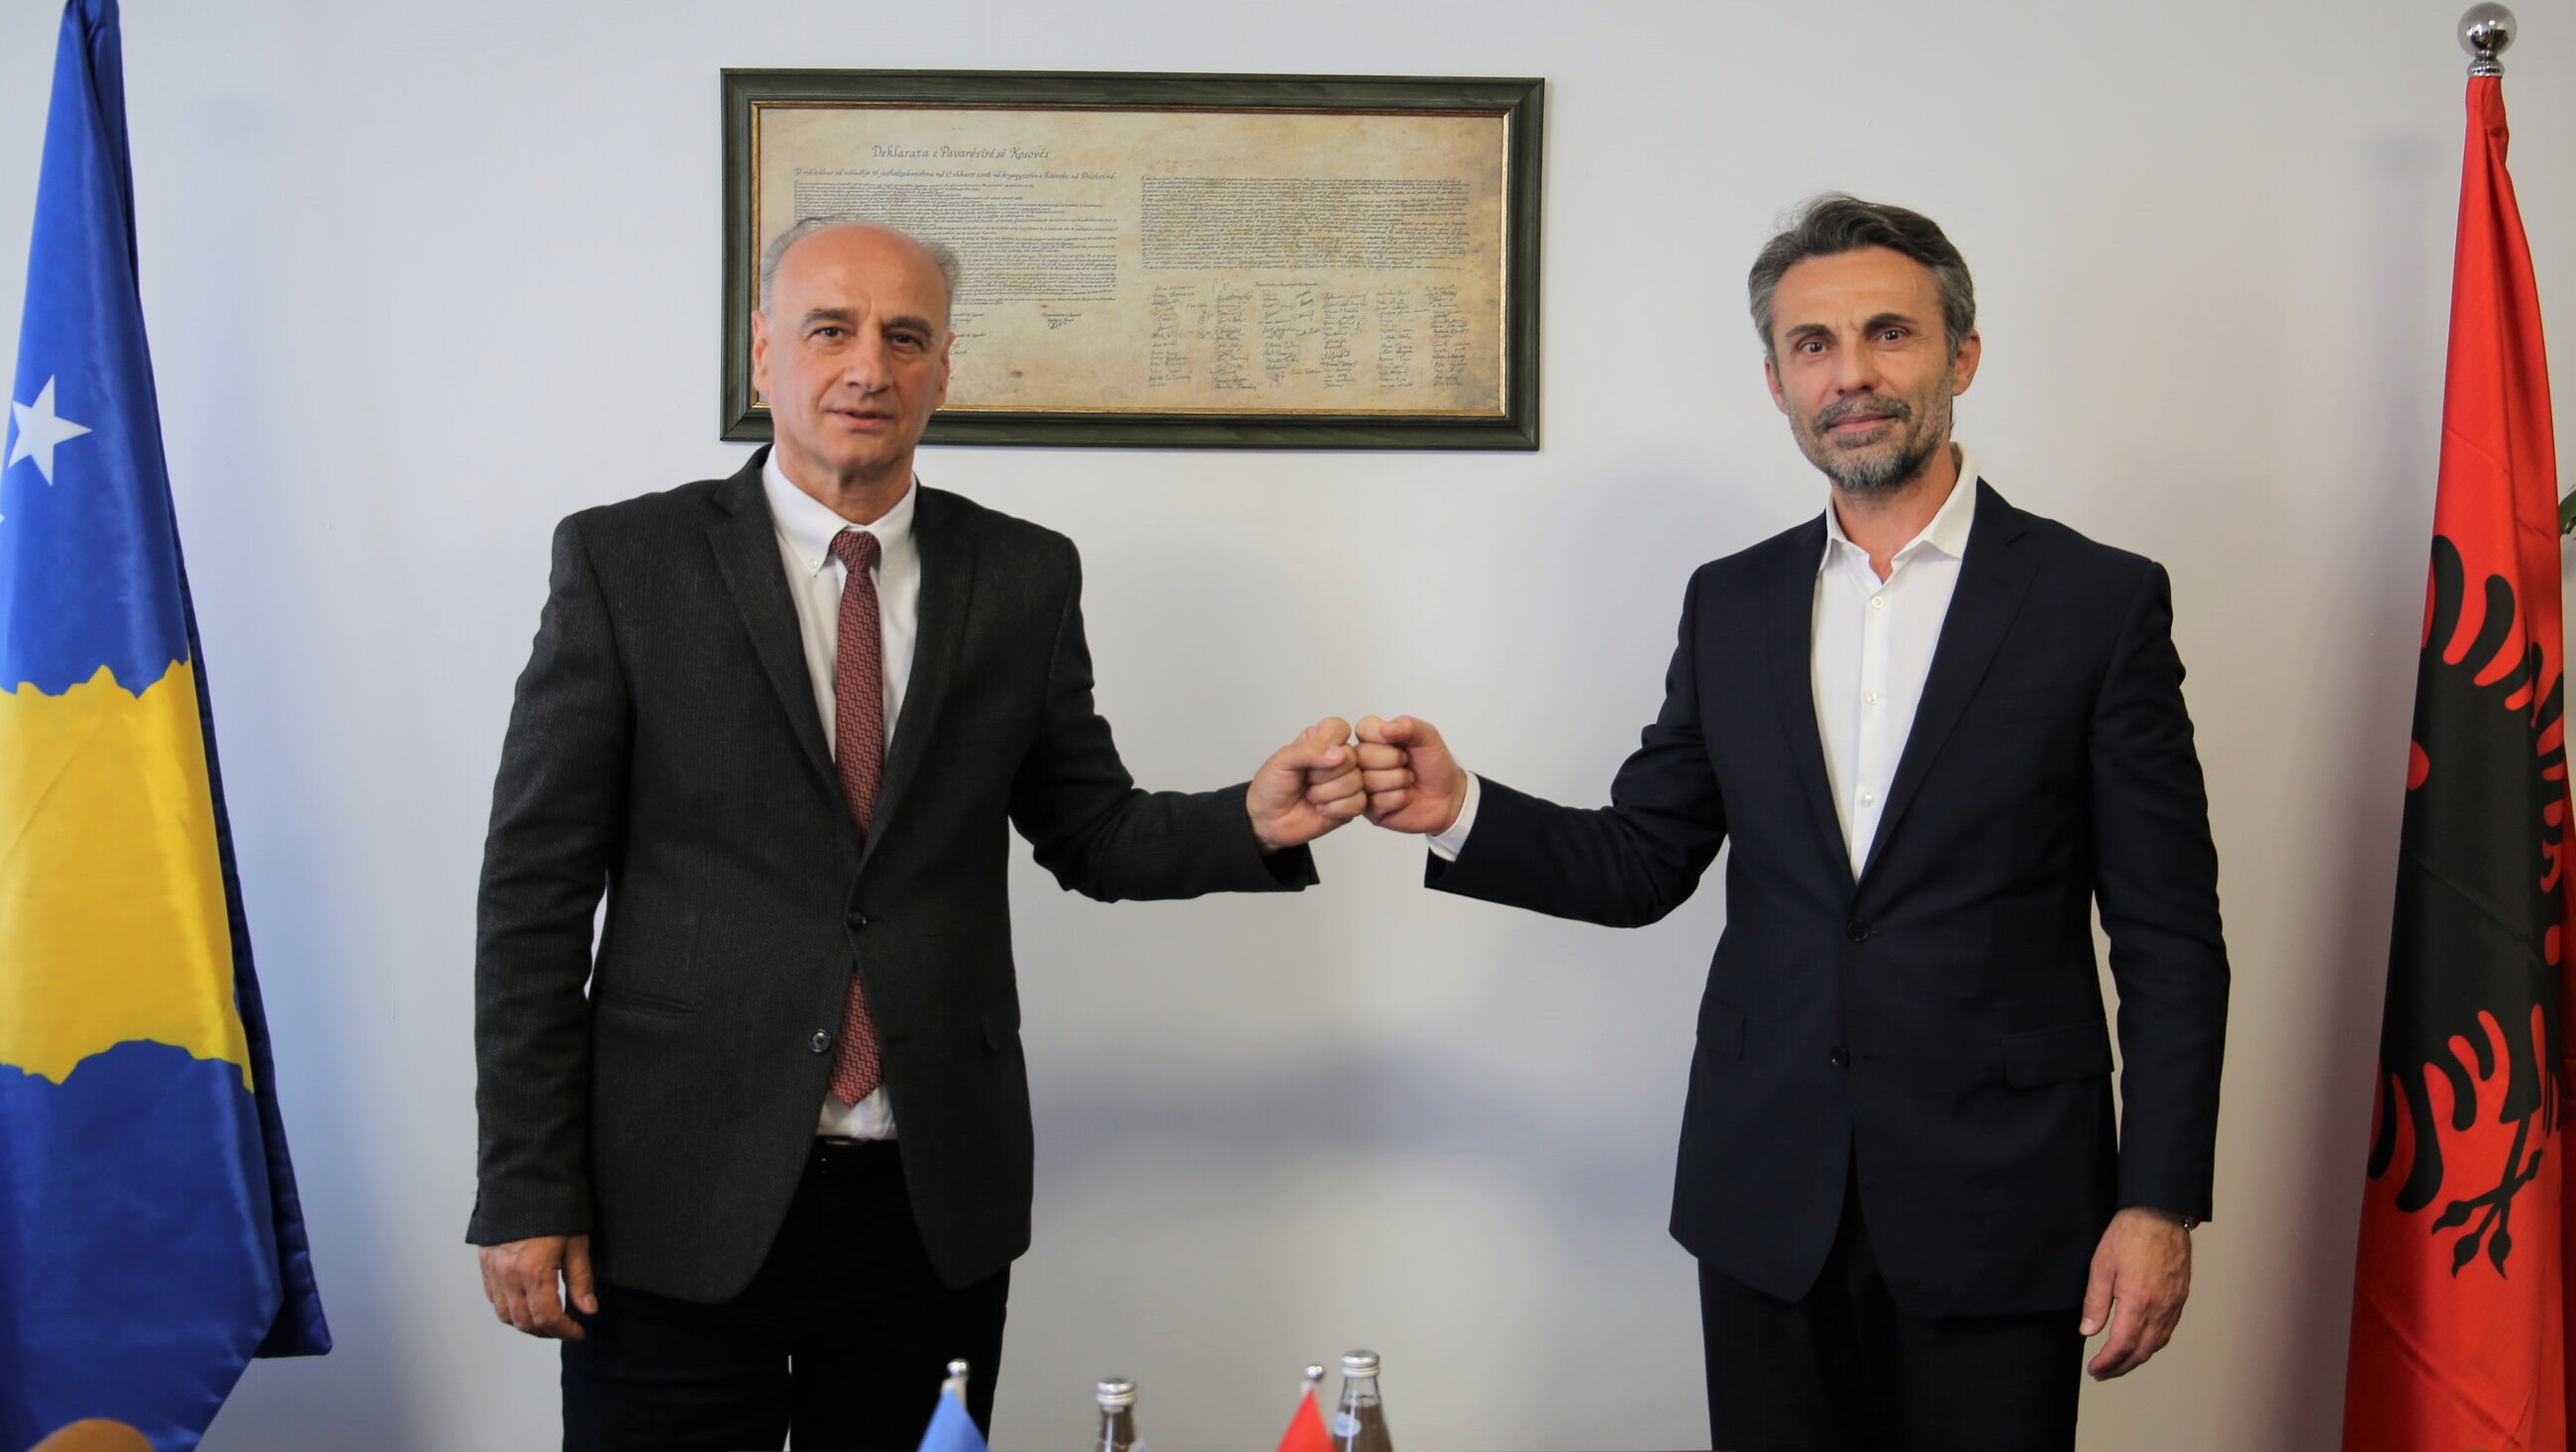 Kryesuesi i Këshillit Prokurorial të Kosovës, Jetish Maloku, është takuar me Kryetarin e Këshillit të Lartë të Prokurorisë së Shqipërisë, Gent Ibrahimi